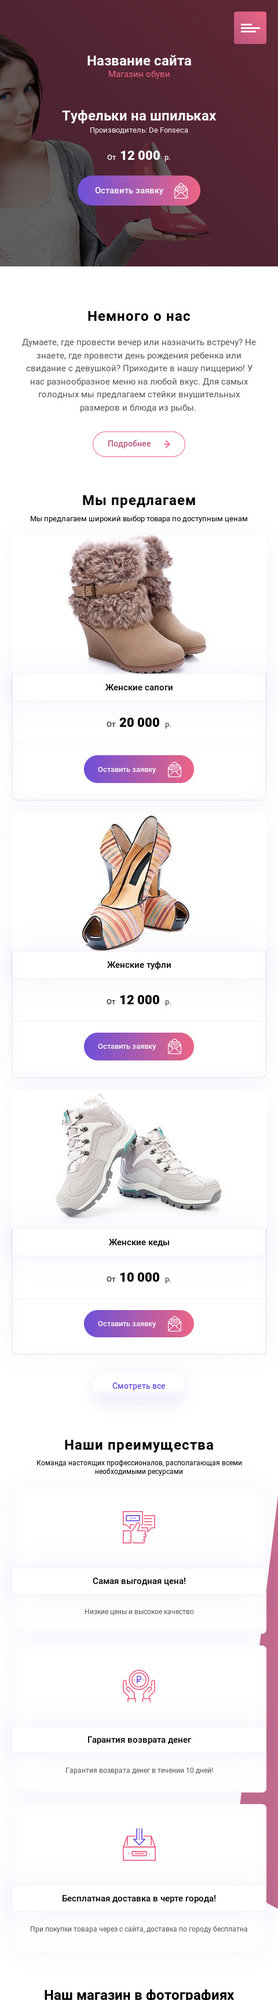 Готовый Сайт-Бизнес № 2021494 - Магазин обуви (Мобильная версия)